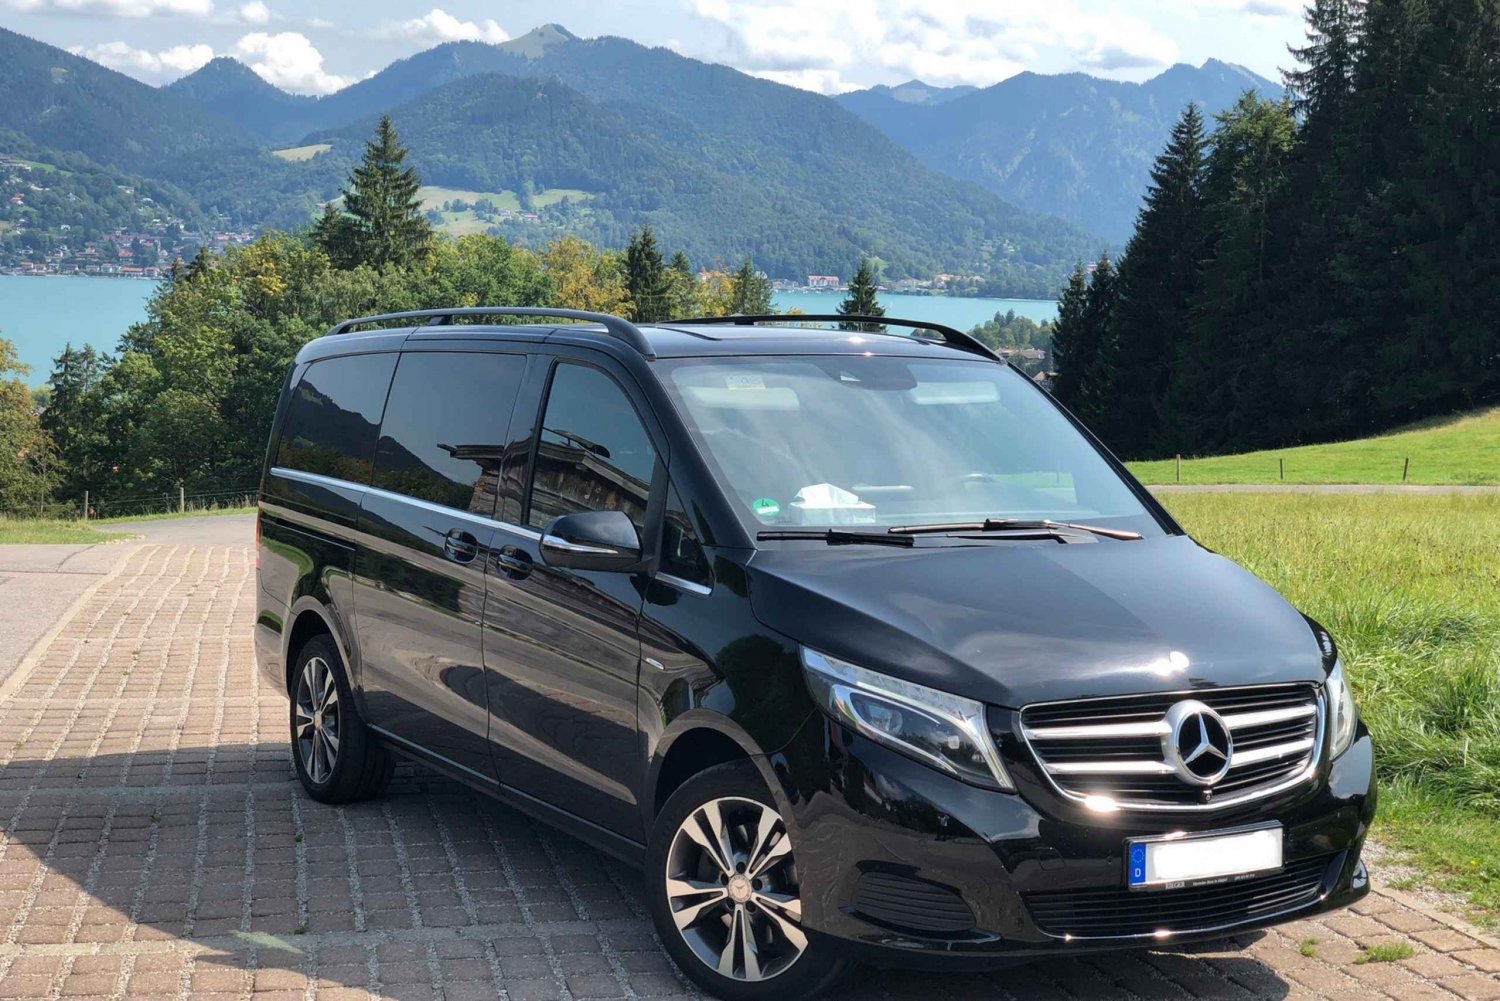 Schloss Neuschwanstein Private Tour im Mercedes Van ab MUC